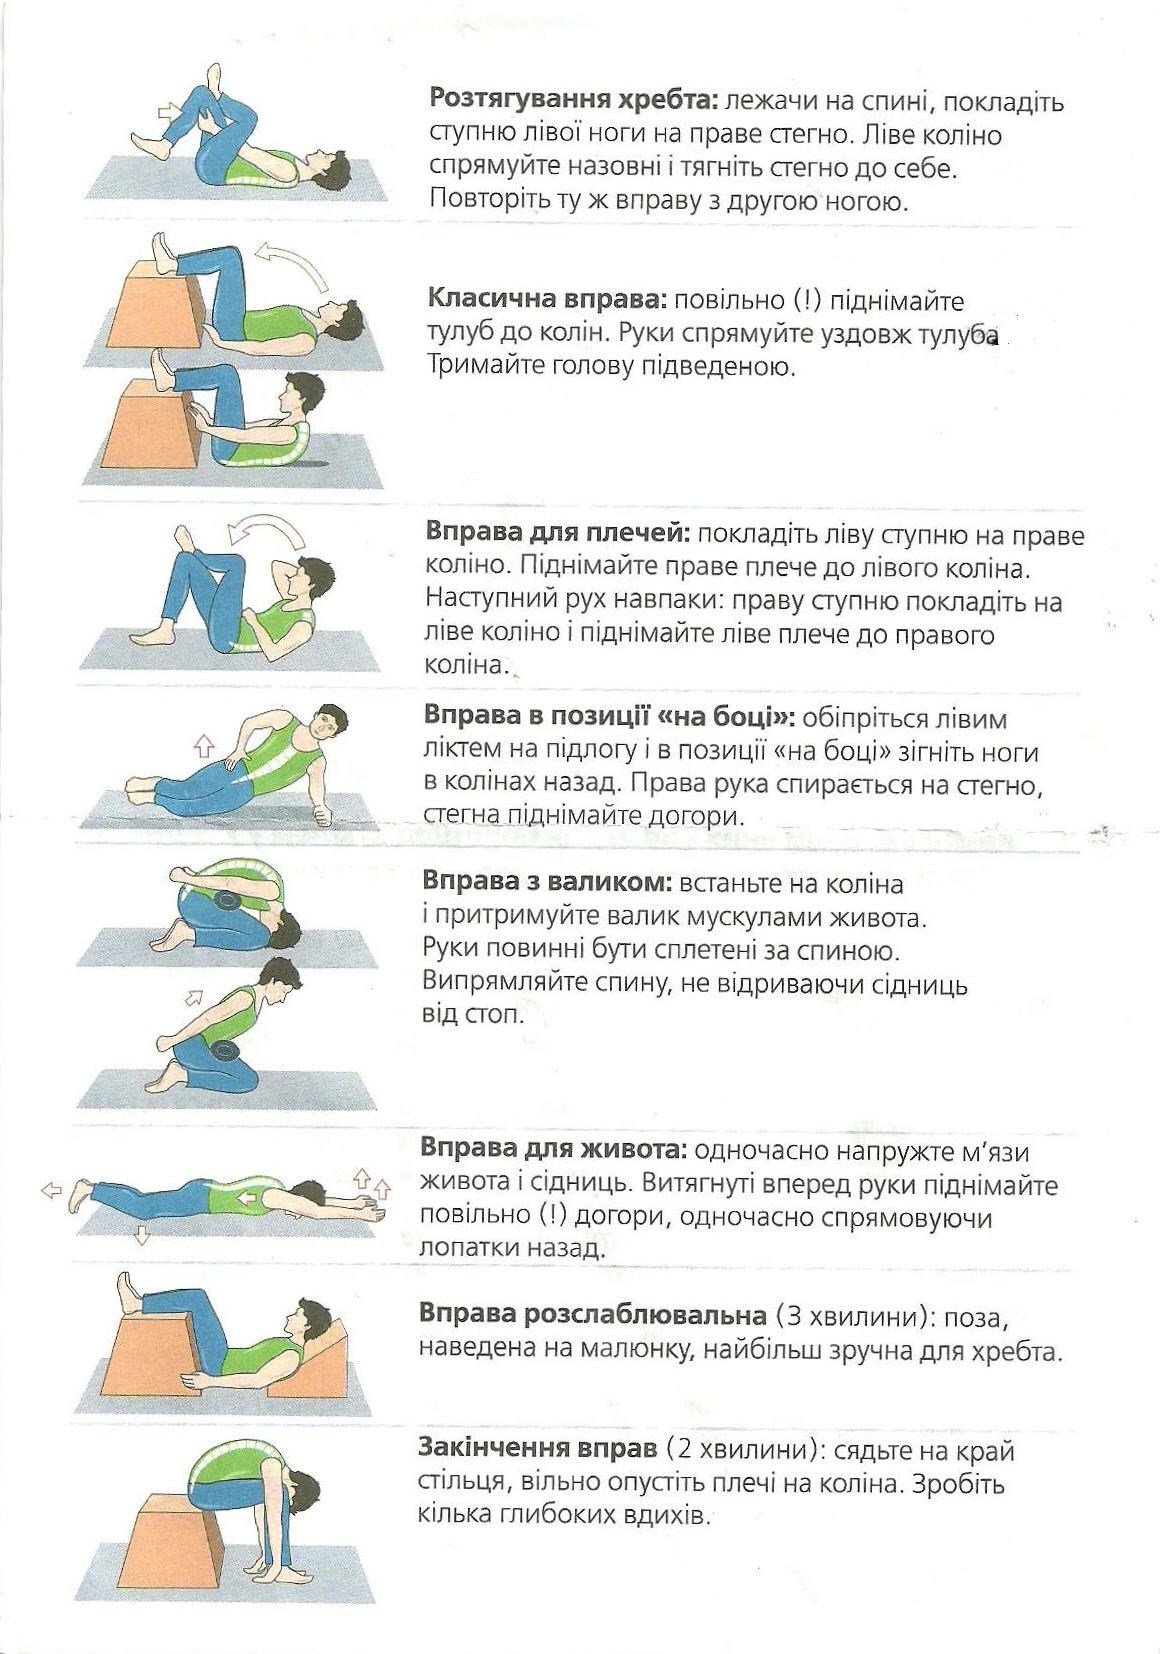 Боль в пояснице в домашних условиях. Упражнение для спины при острой боли в пояснице. Комплекс гимнастики при болях в пояснице. Упражнения для мышц спины при болях в пояснице. Упражнения при болях в поясничном отделе.